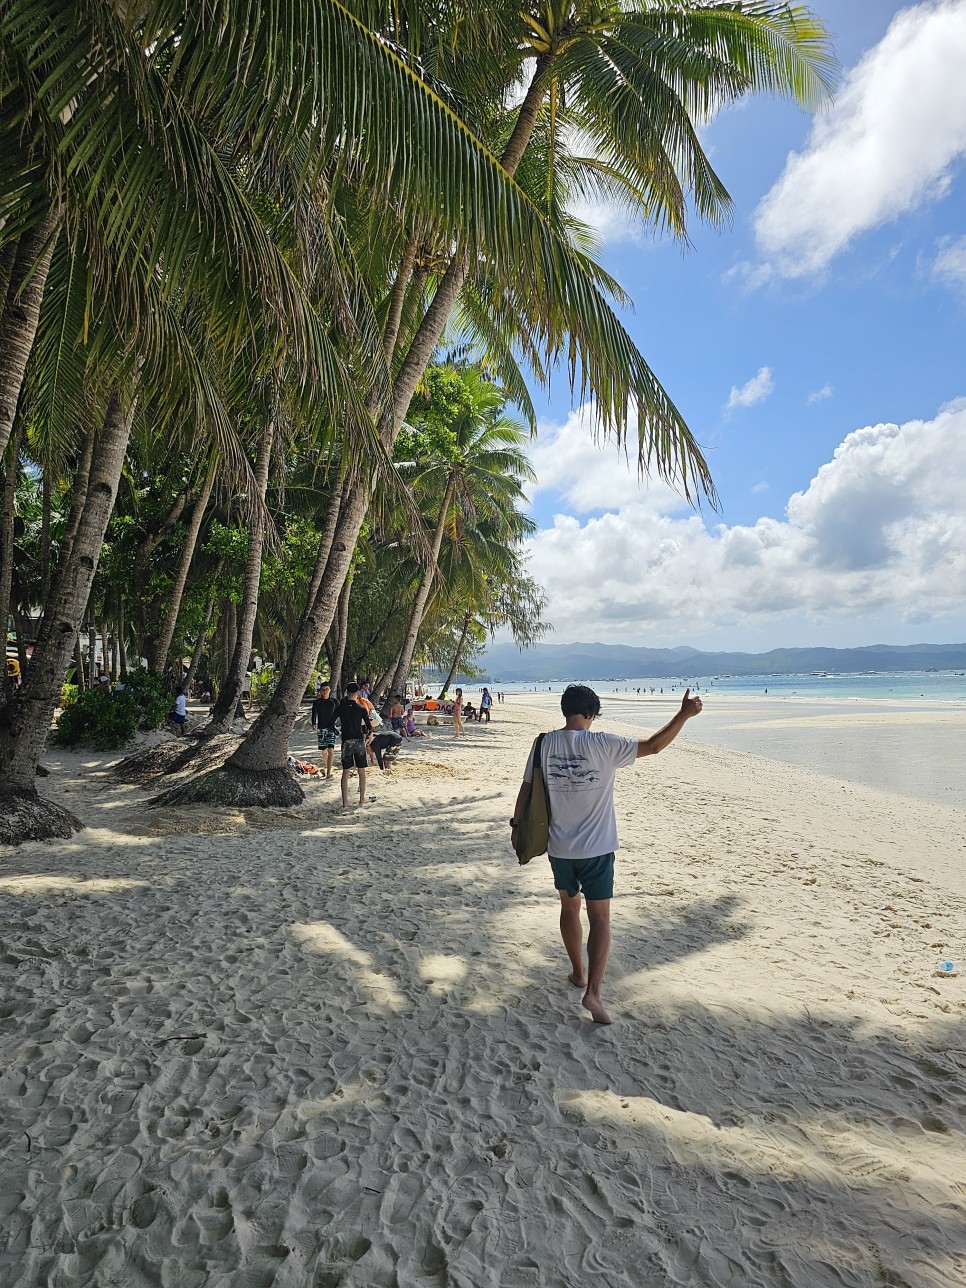 필리핀 보라카이 자유여행 패키지 보라카이가볼만한곳 + 성공한 맛집 리스트 추가